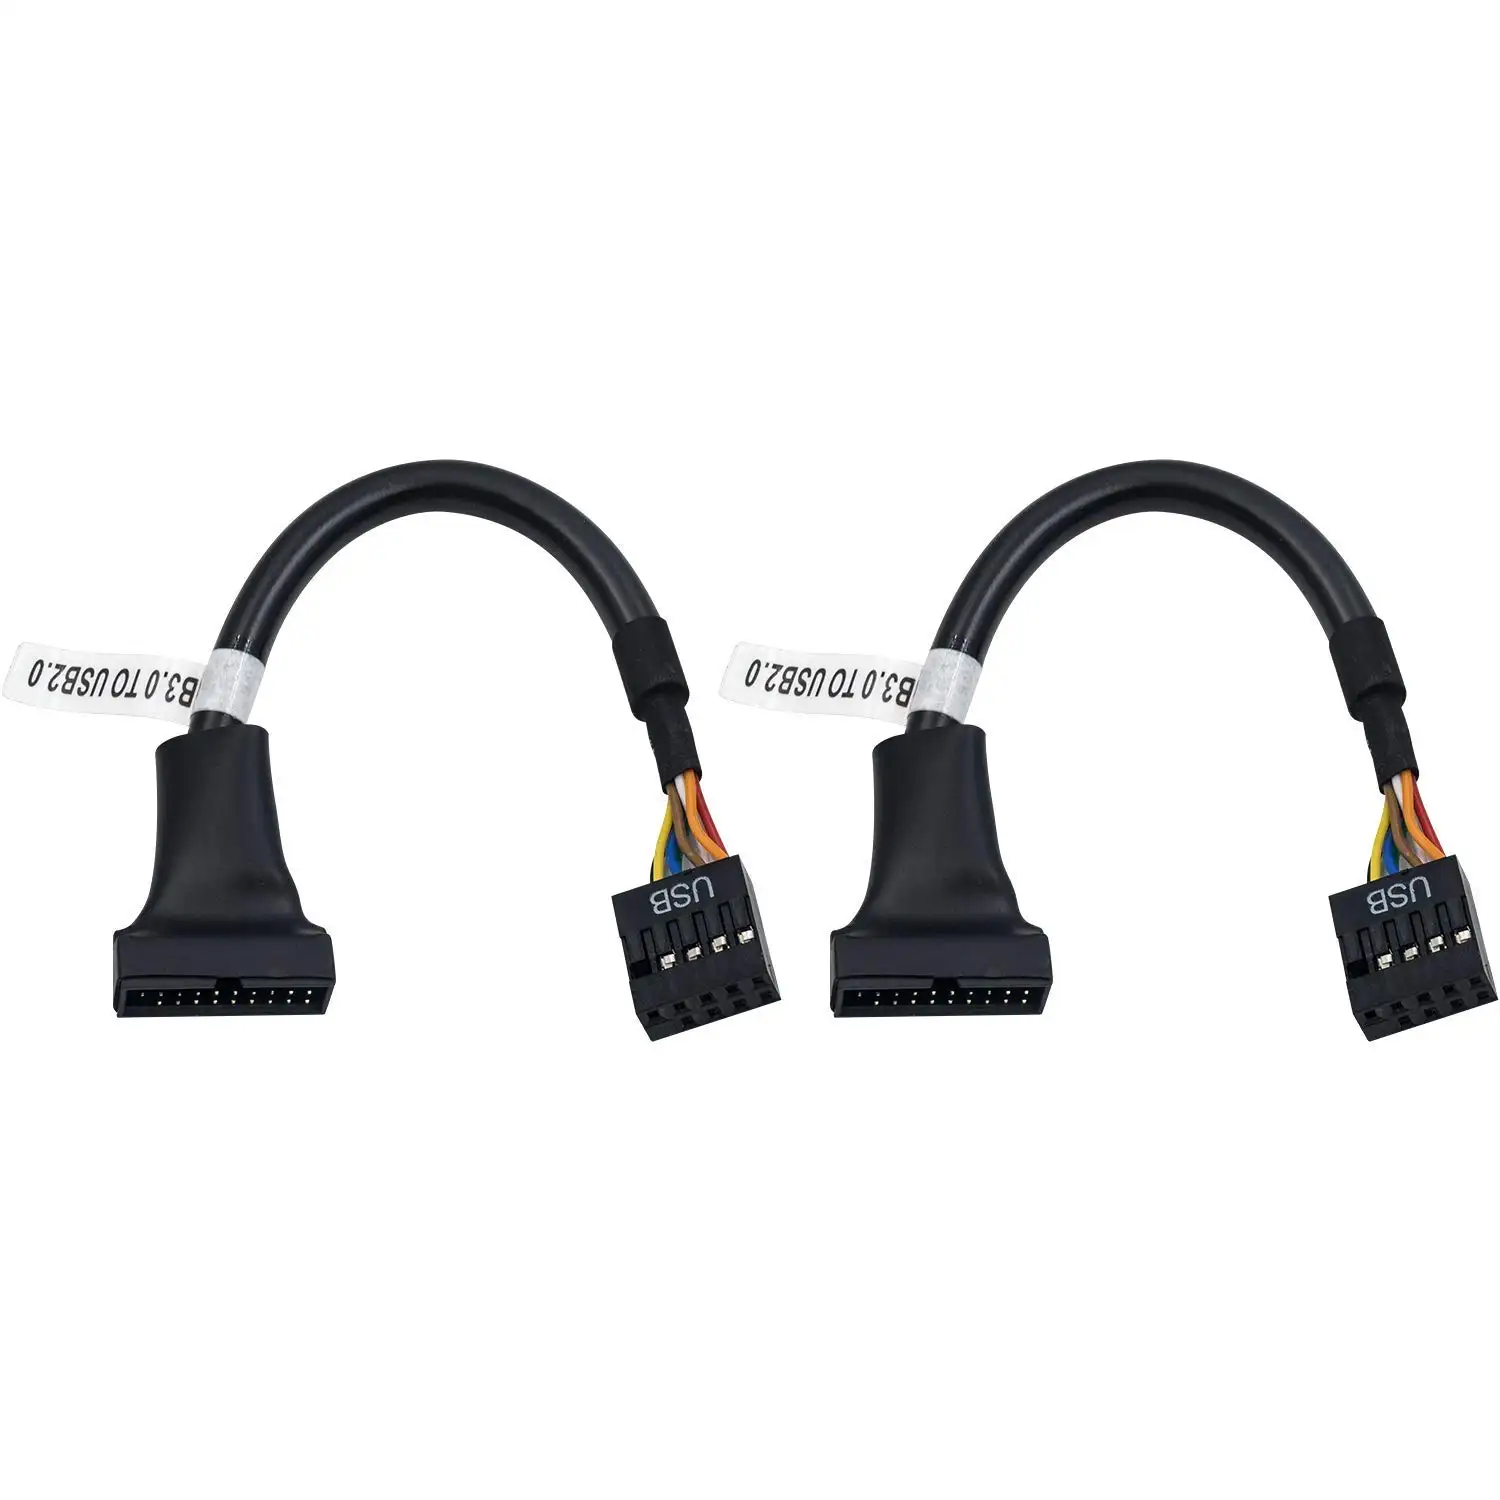 Заводской кабель 2021 cabletolink 19 Pin USB3.0 штекер на 9 Pin USB2.0 гнездо материнской платы адаптер конвертер 6 дюймов/15 см оптовая продажа